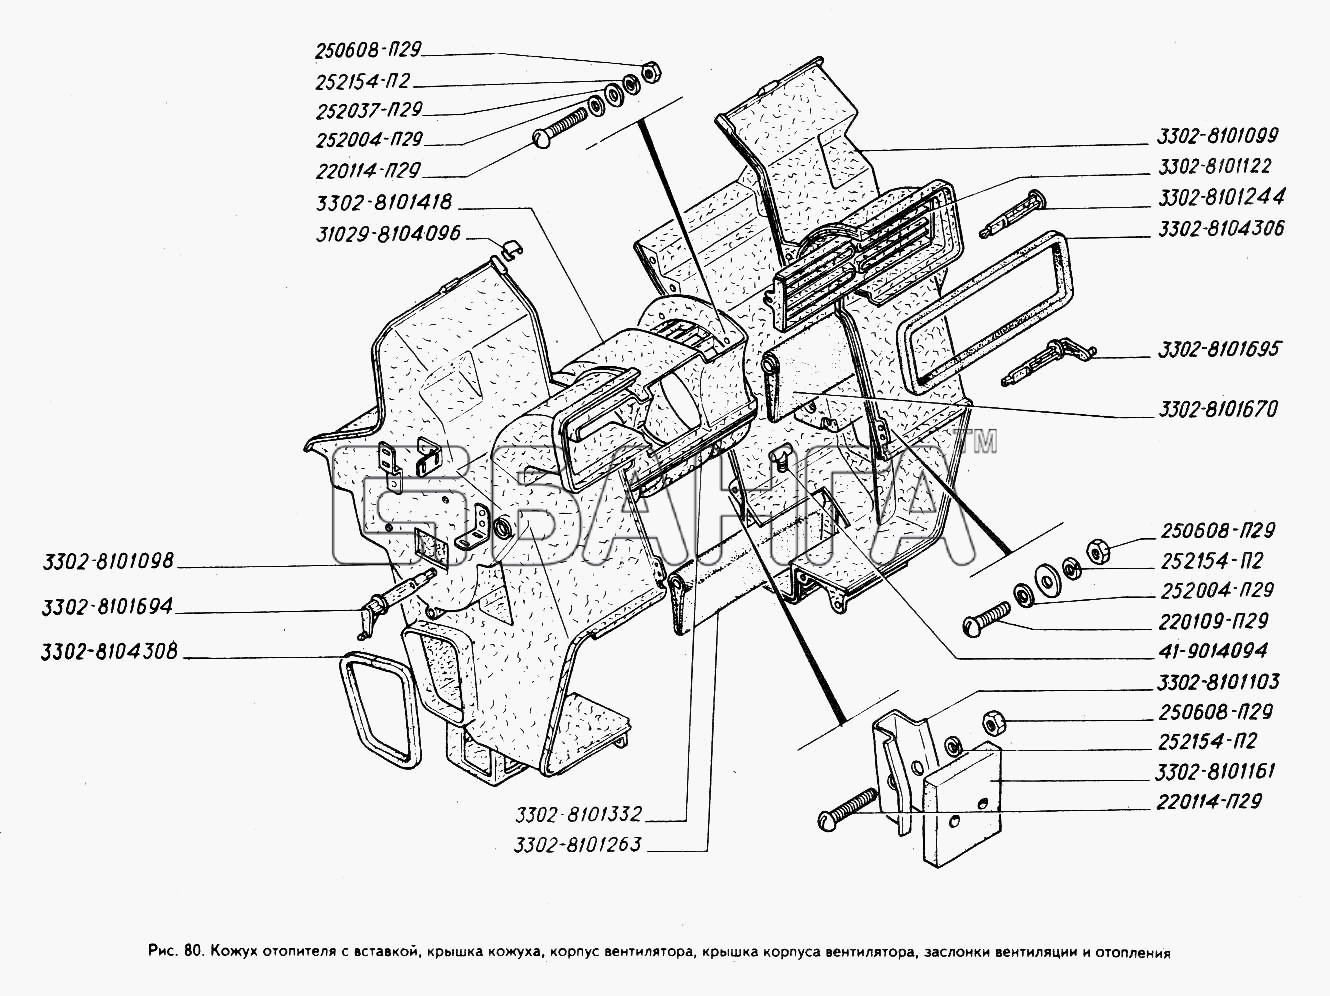 ГАЗ ГАЗ-3302 (ГАЗель) Схема Кожух отопителя с вставкой крышка кожуха